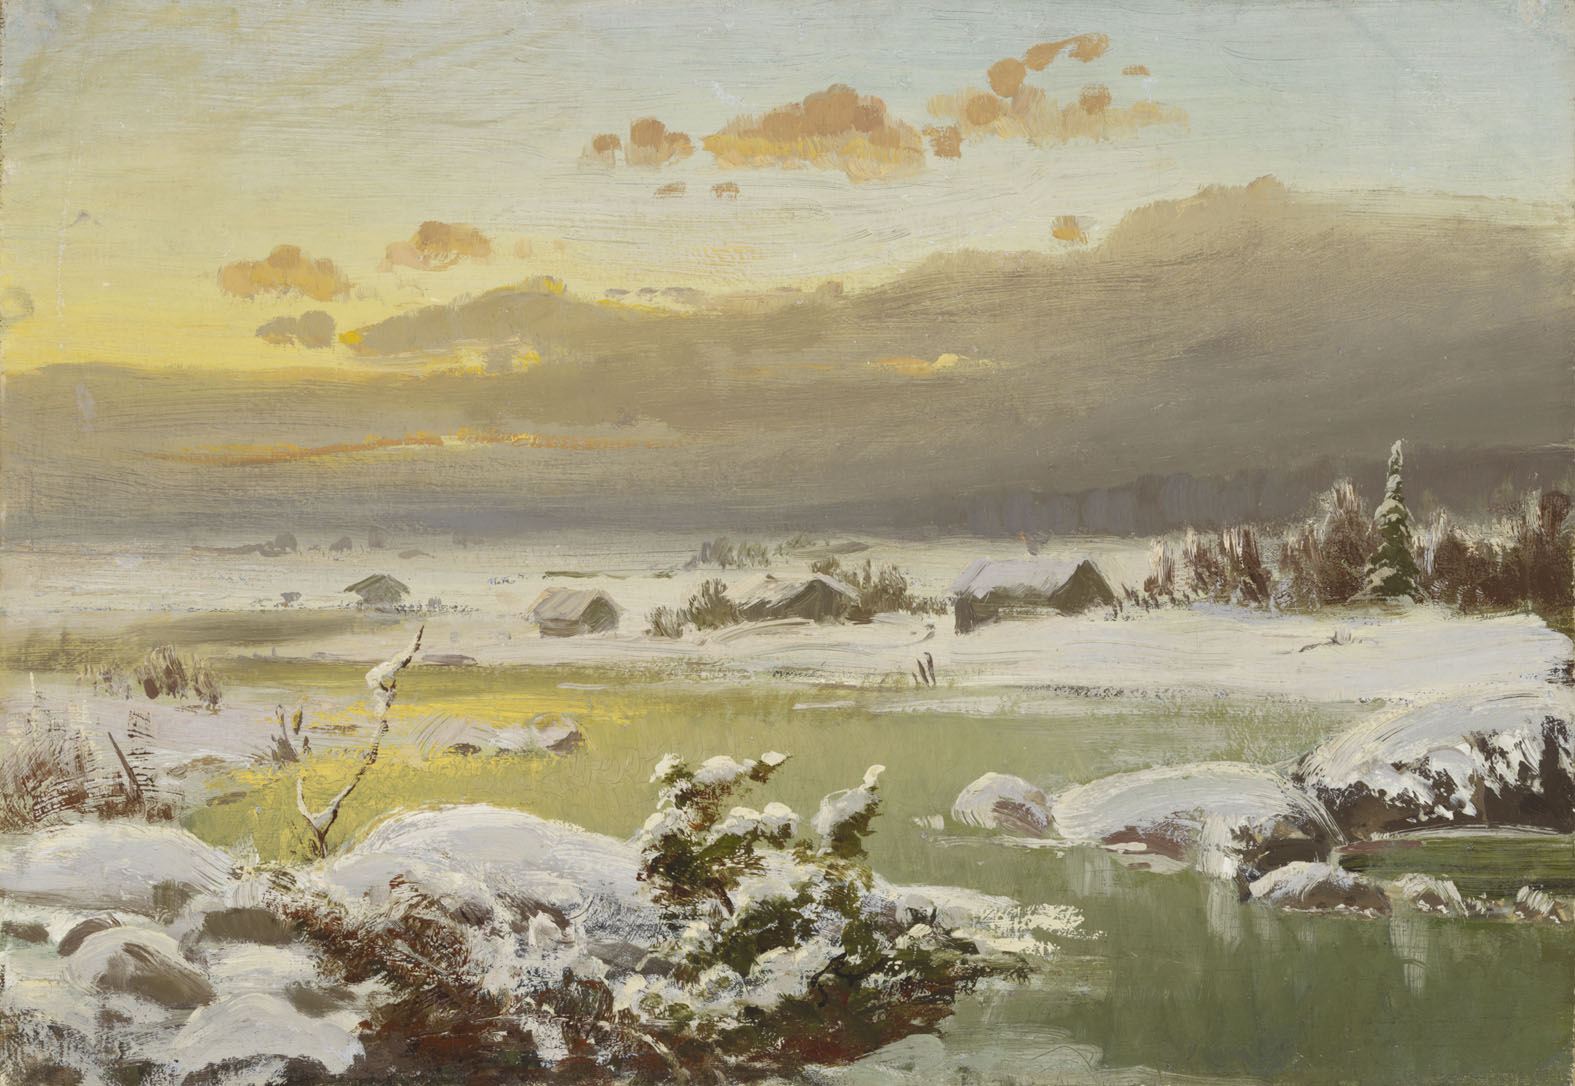 冬季風景 by Fanny Churberg - 1878 年 - 34 × 48.5 釐米 